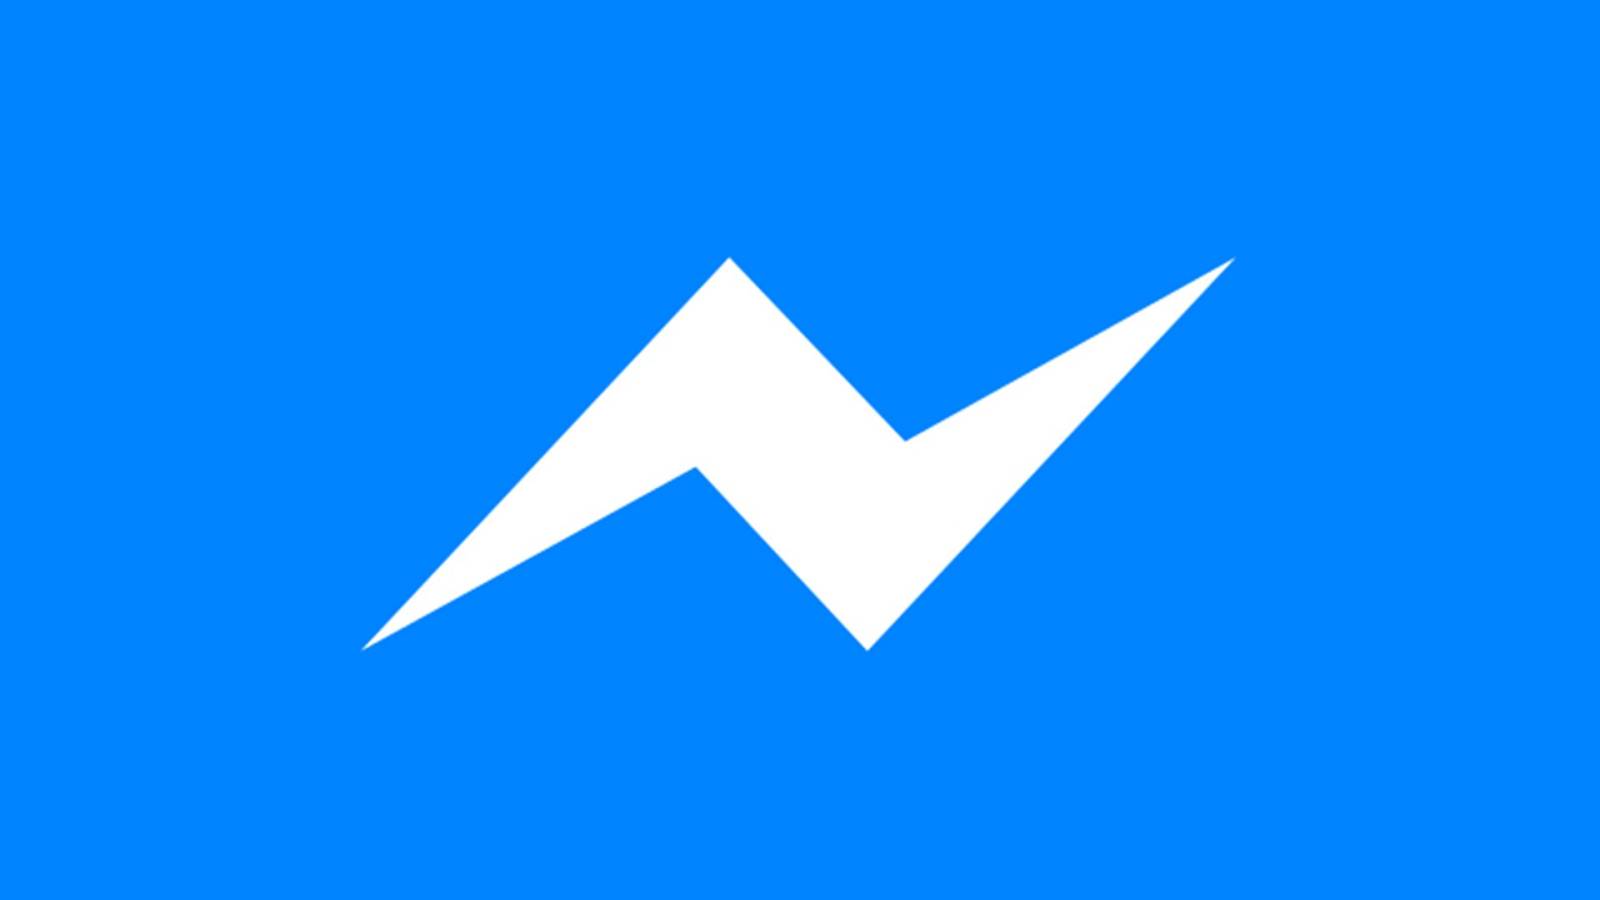 De nieuwe update voor Facebook Messenger uitgebracht op telefoons en tablets